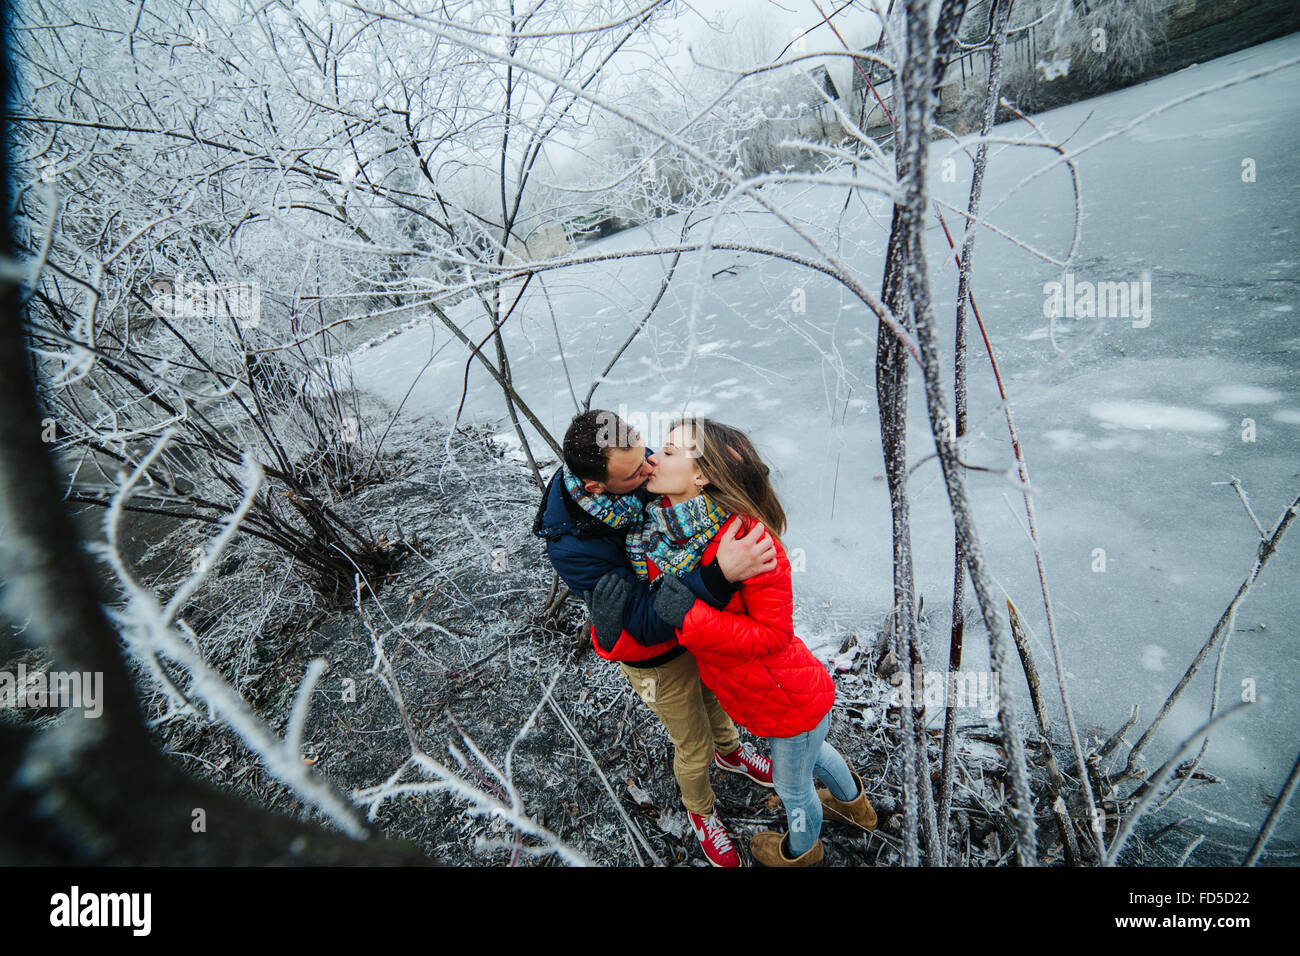 Beautiful couple posant près d'une rivière gelée Banque D'Images